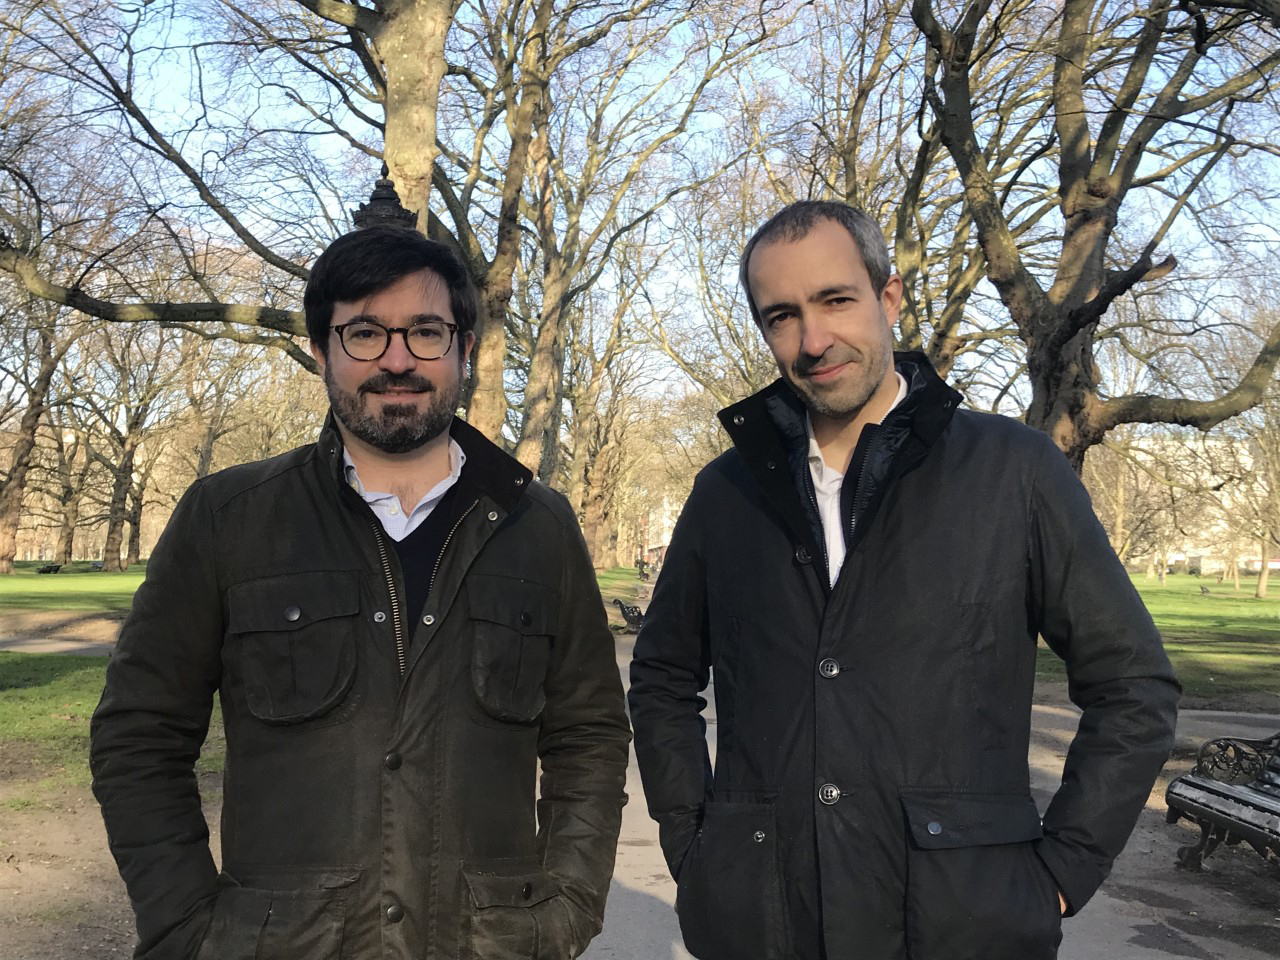 Tony Timoner (izquierda) y Luis Quiroga, fundadores de Oikos, en Green Park, Londres